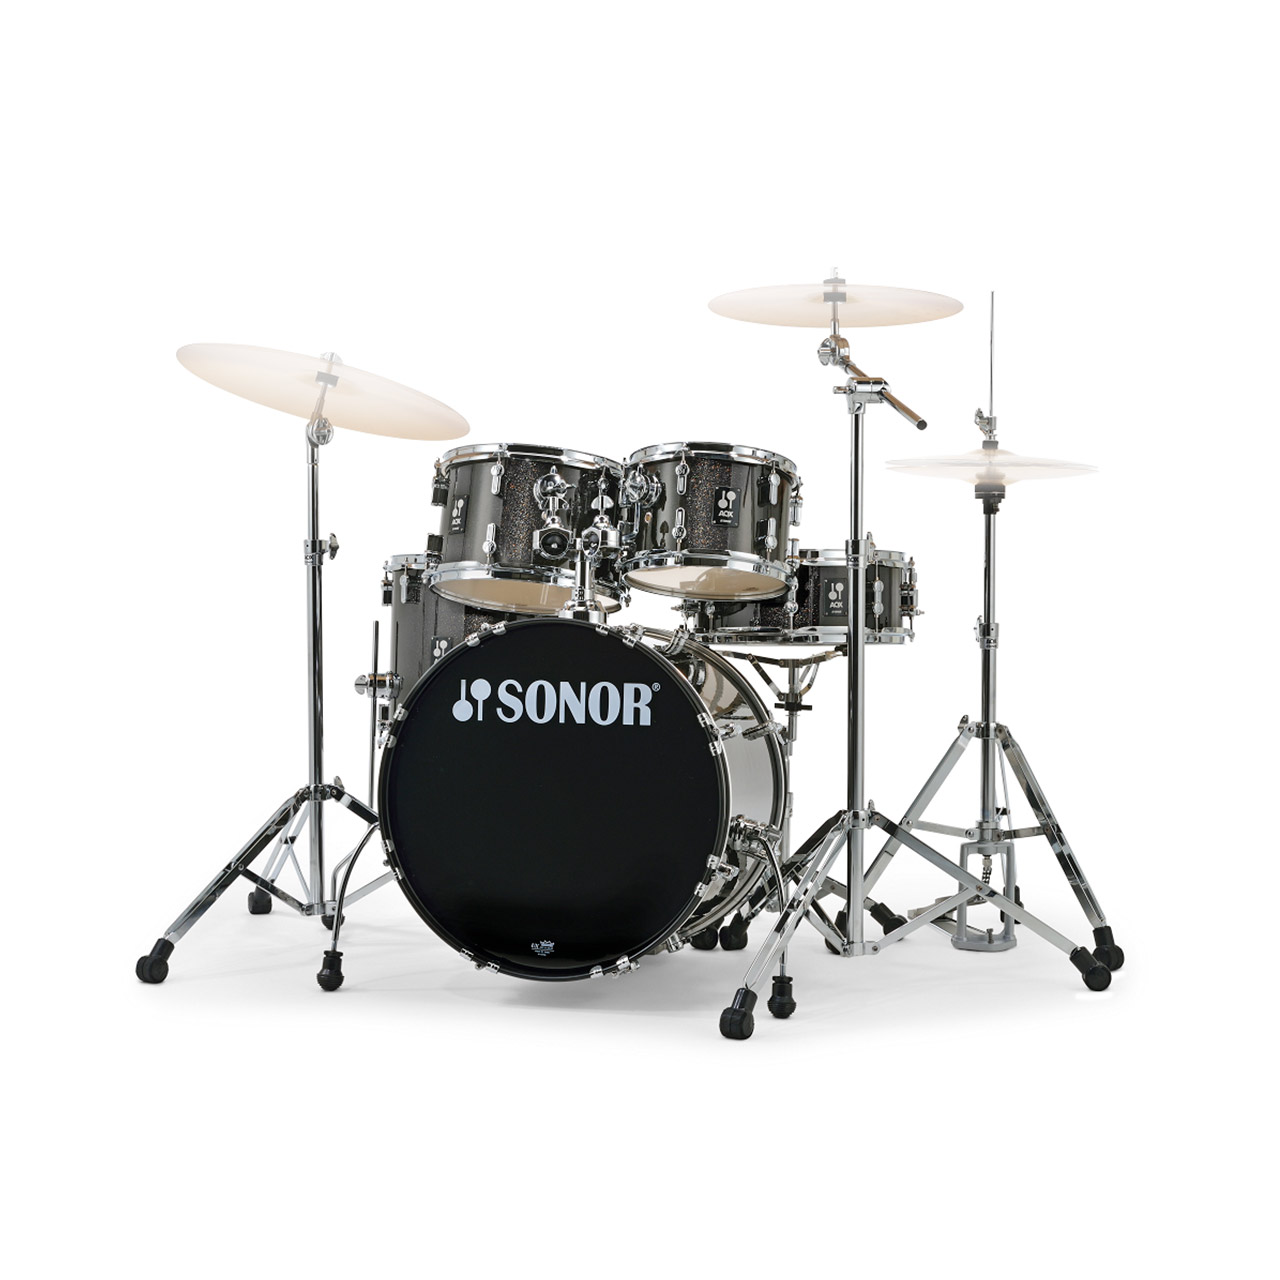 Sonor AQX Kids Drum Set Black Midnight Sparkle inkl Hocker, Hardware und Becken